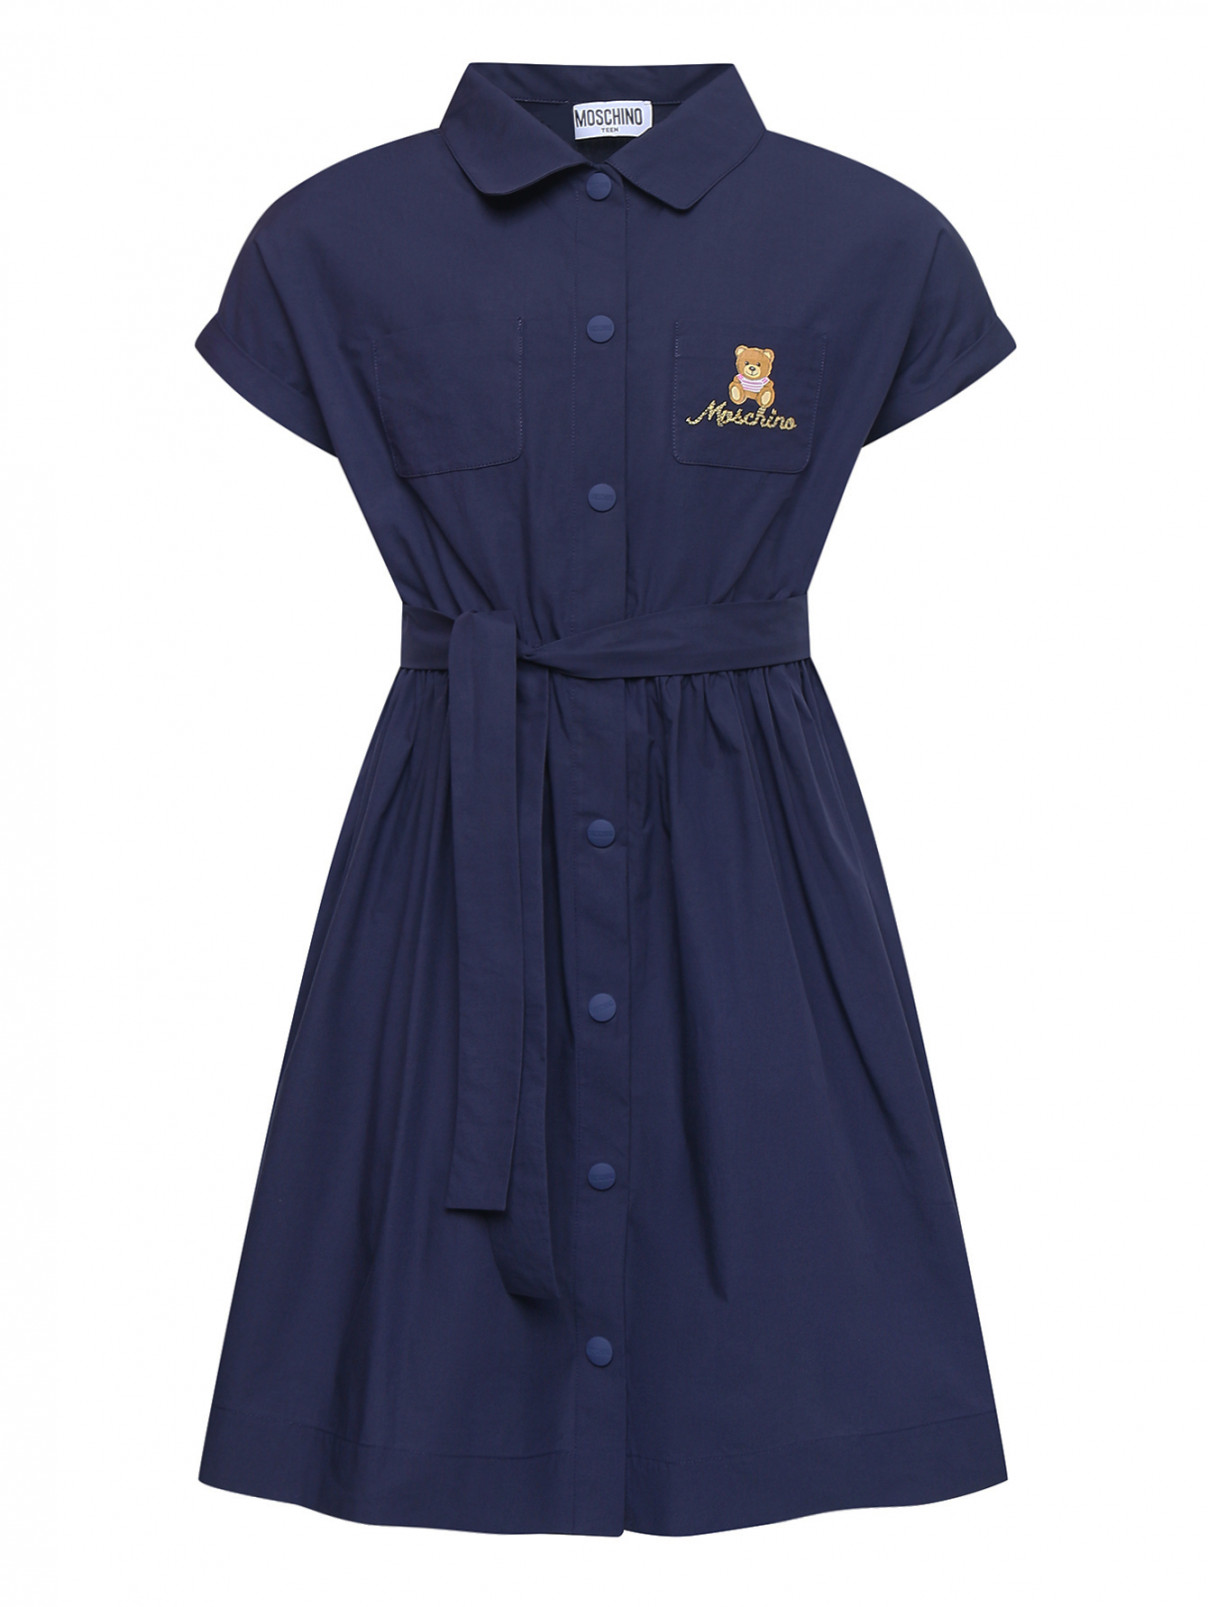 Хлопковое платье на кнопках Moschino  –  Общий вид  – Цвет:  Синий